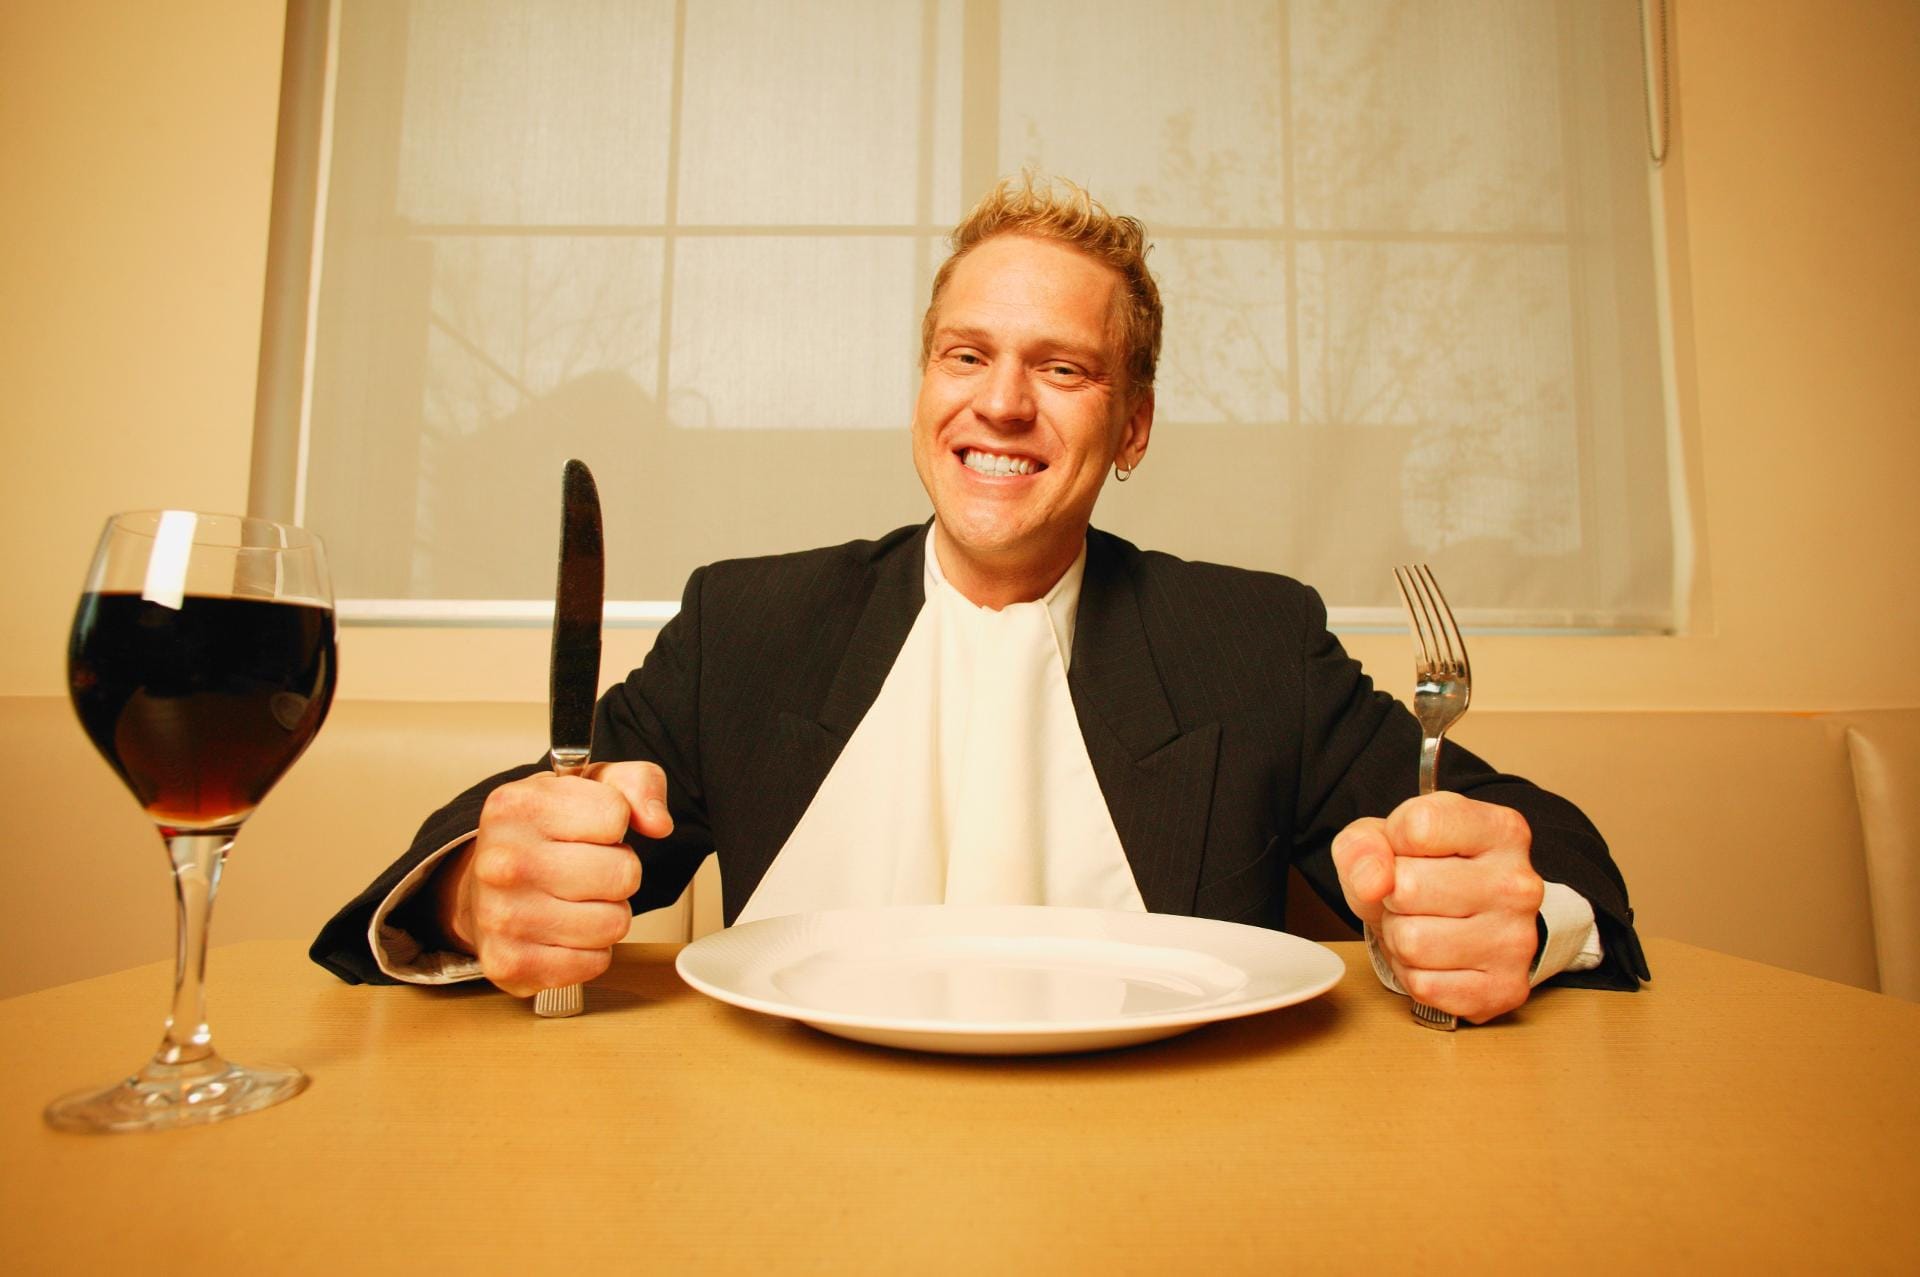 Voll daneben: Servietten werden niemals ins Hemd gestopft – auf die Krawatte muss man während des Essens schon selbst aufpassen.